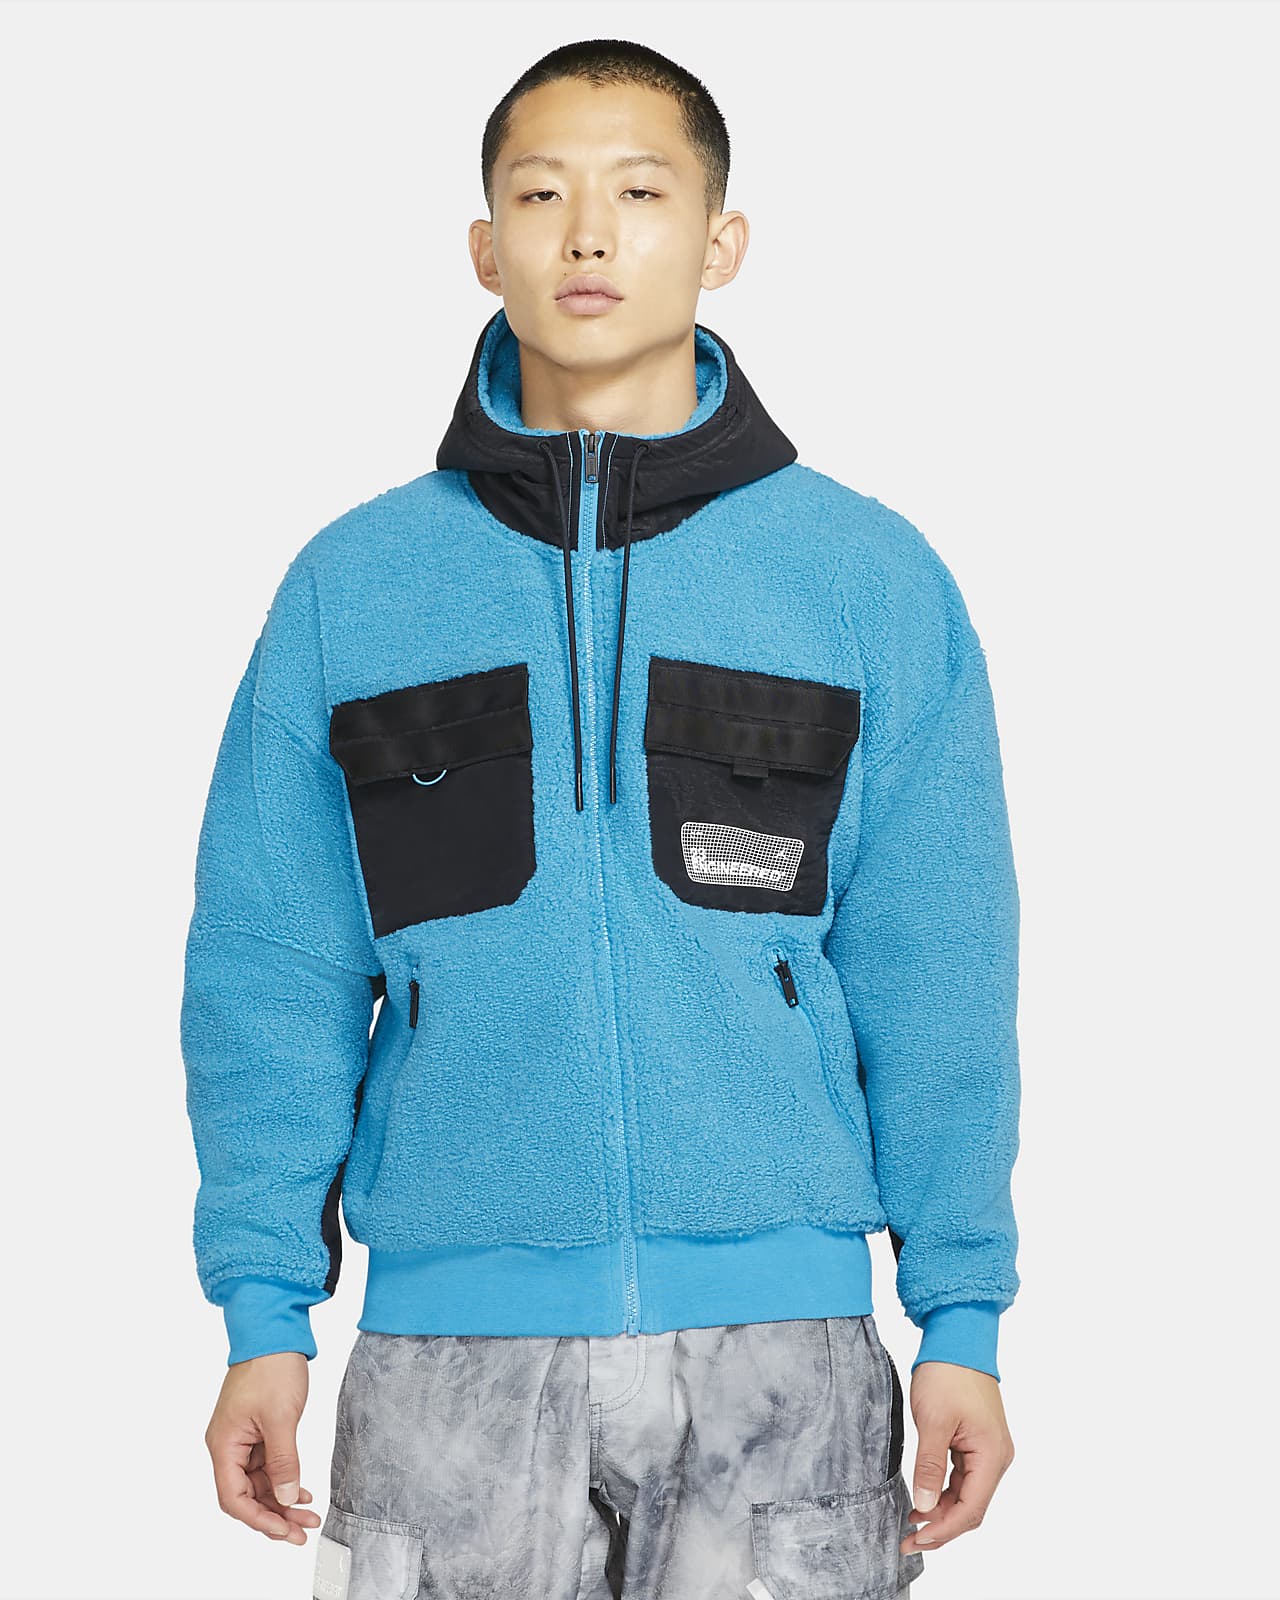 jordan sherpa pullover hoodie